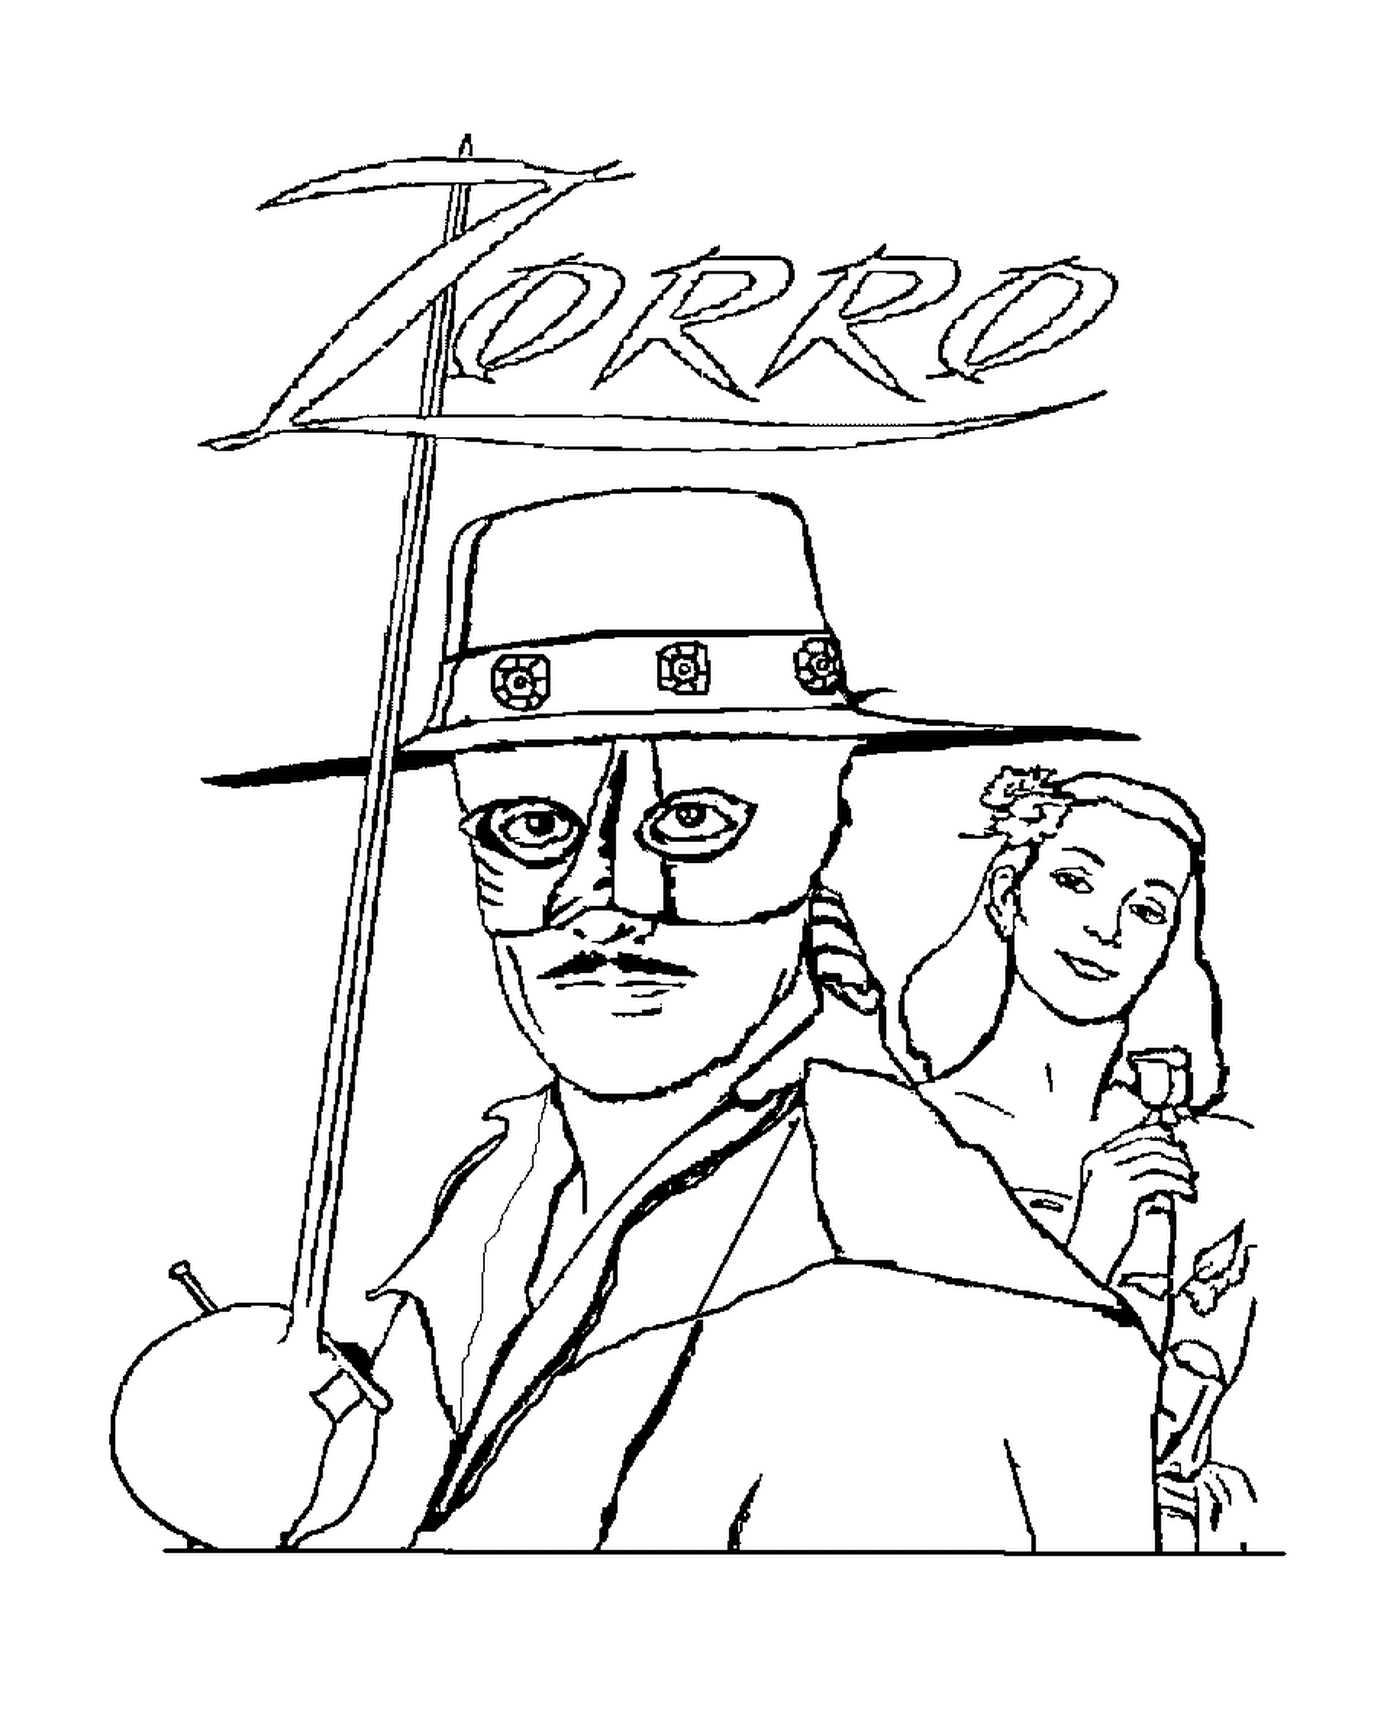  Zorro the masked vigilante and a man 